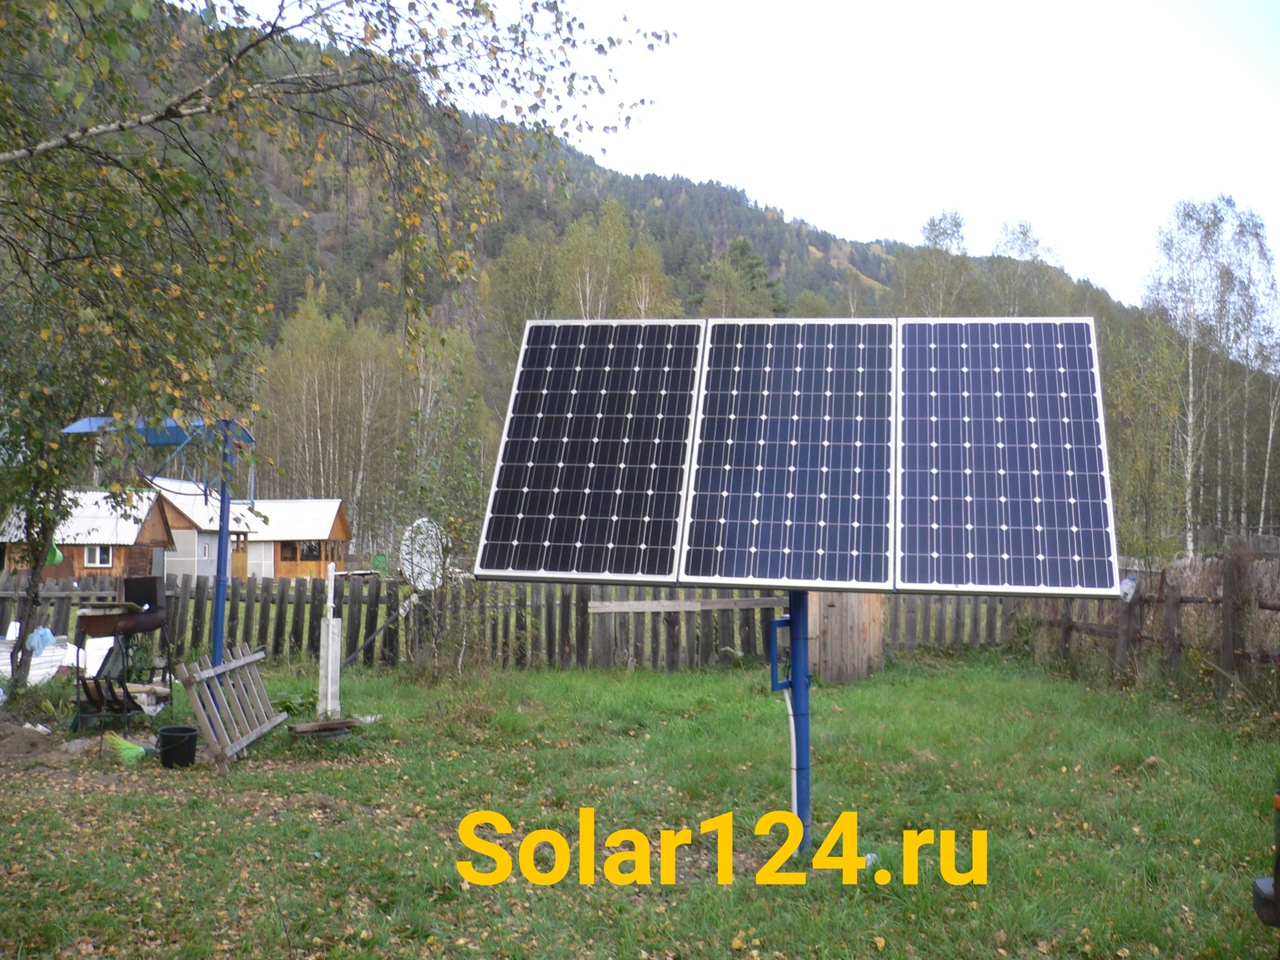 Автономная солнечная электростанция. Республика Хакасия, Таштыпский район, Кубайка, частный дом